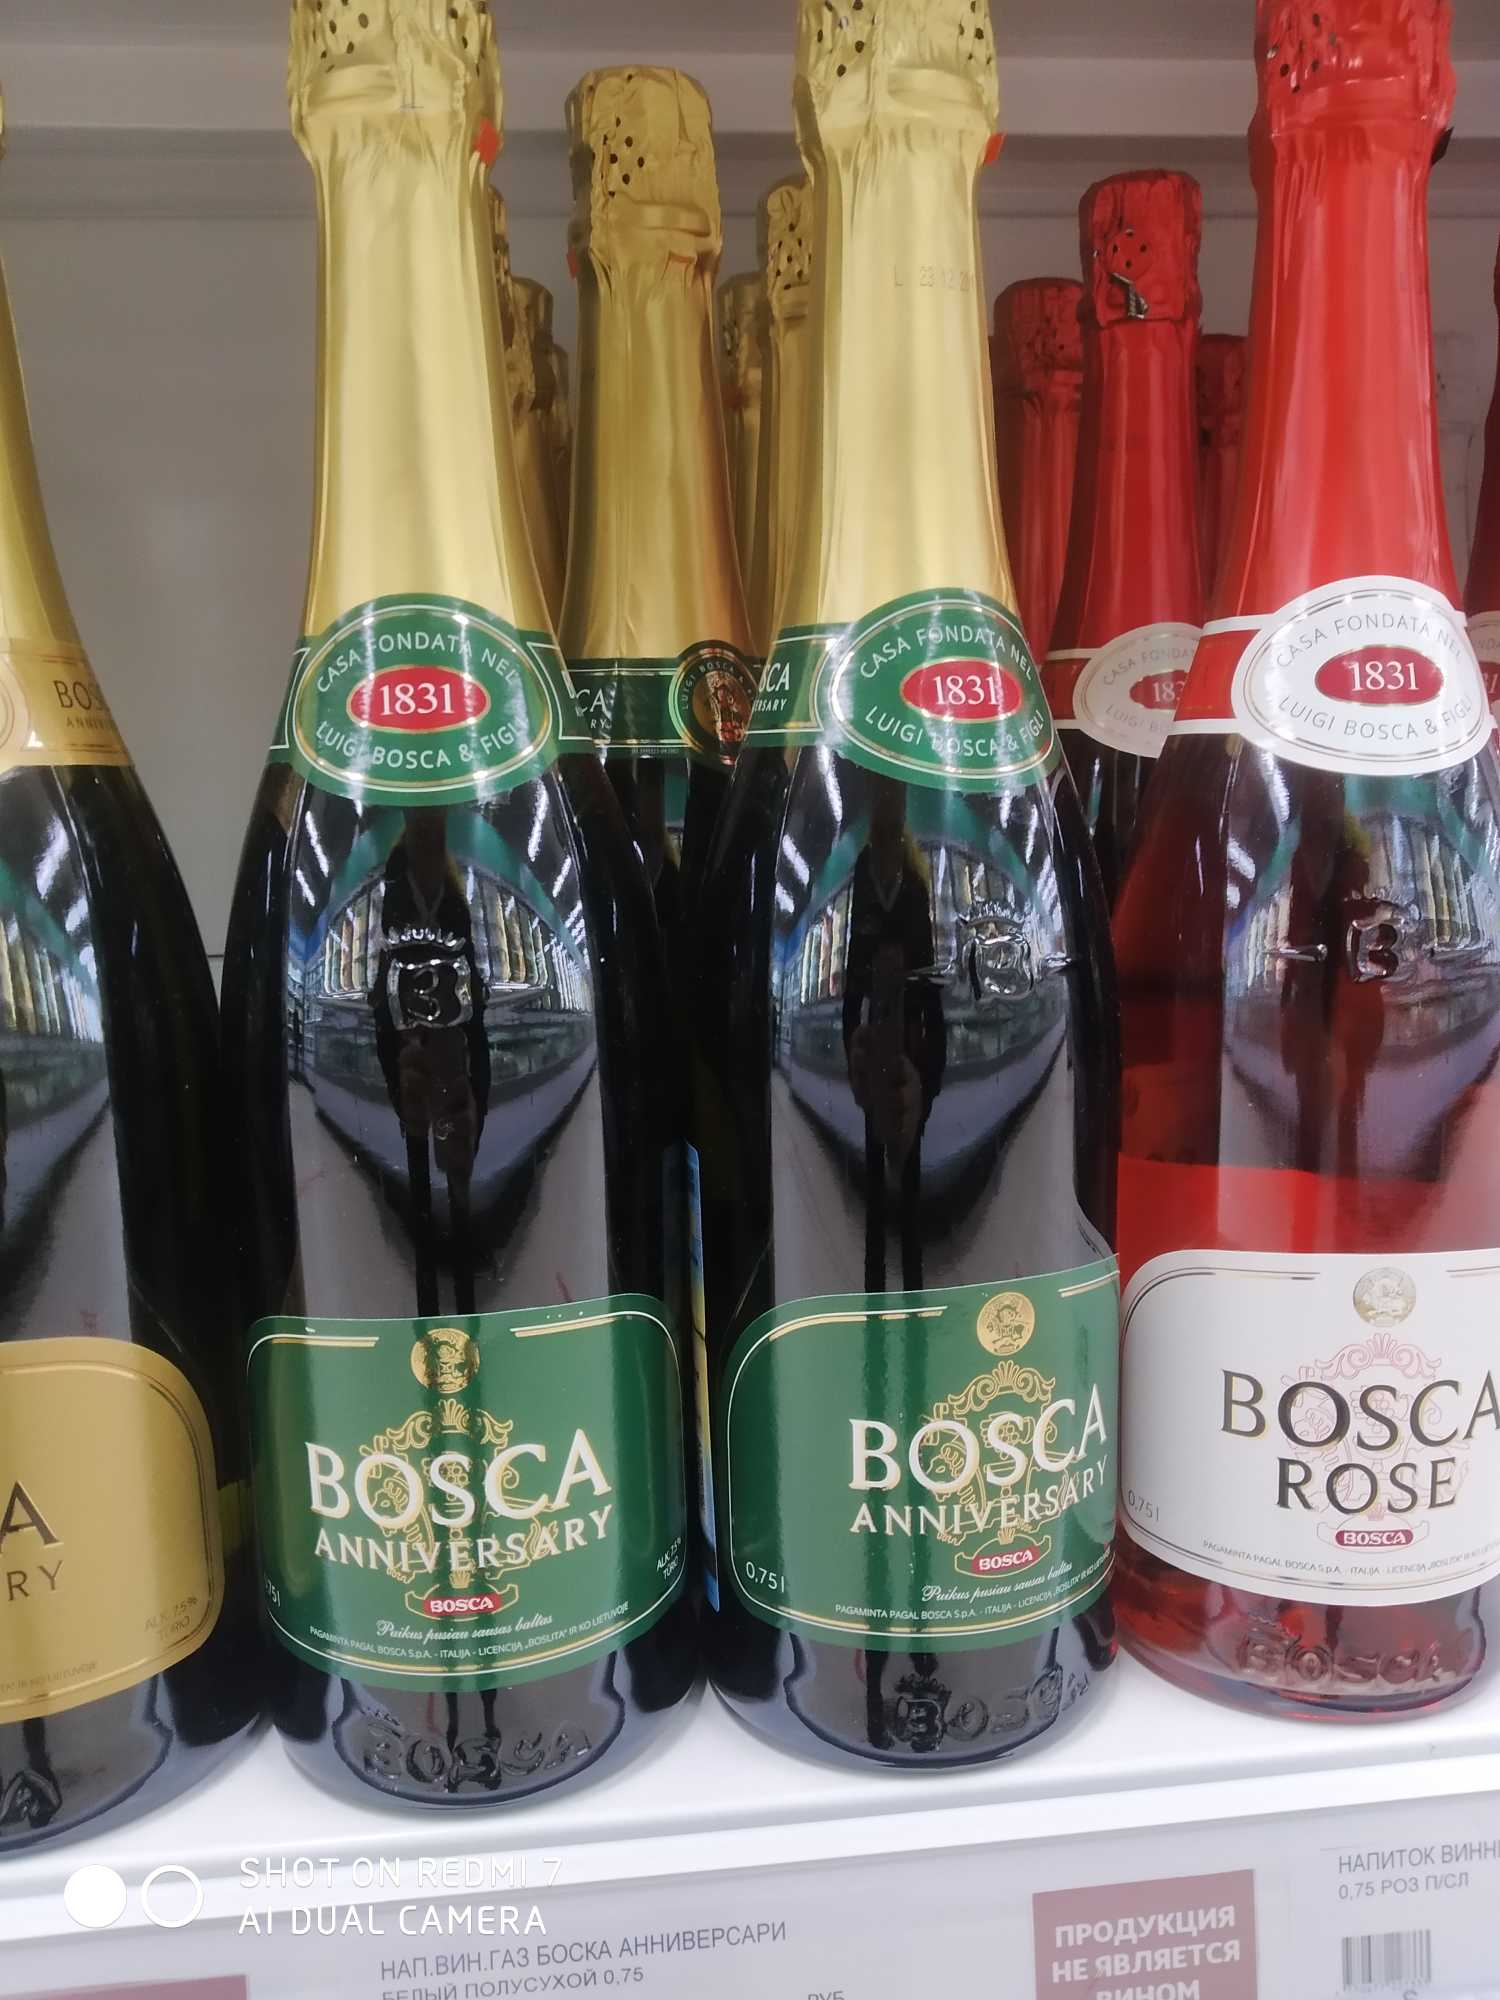 Боско сладкое. Винный напиток Bosca Боско. Боско шампанское Анниверсари. Напиток винный Bosca Анниверсари. Винный напиток Bosca Rose 0.75.